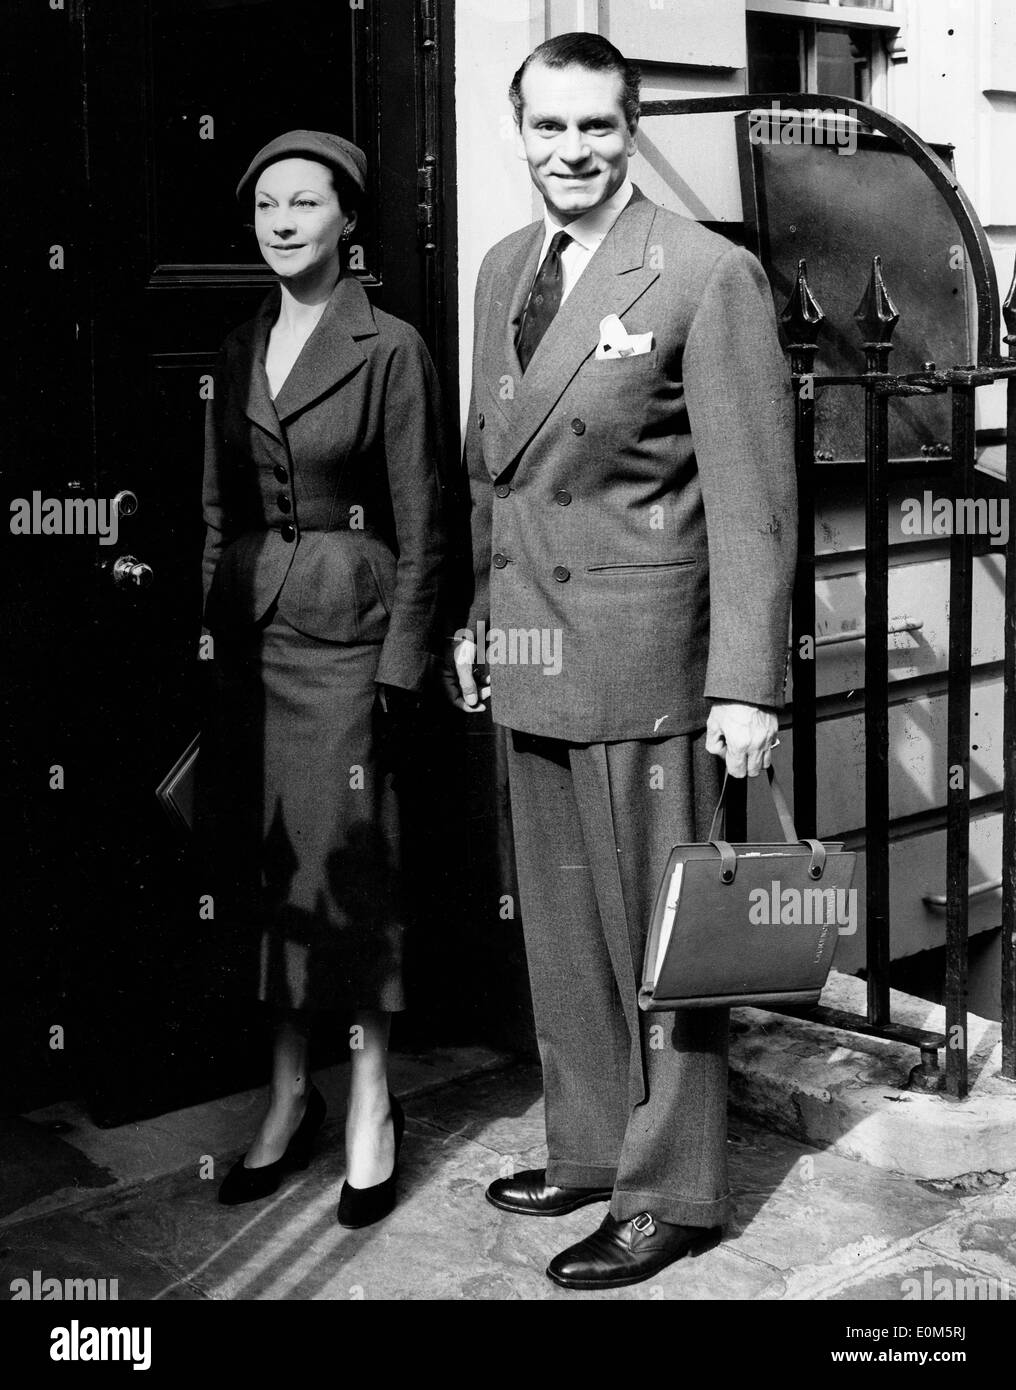 Acteur Laurence Olivier et épouse Vivien Leigh sur leur façon de rehearsal Banque D'Images